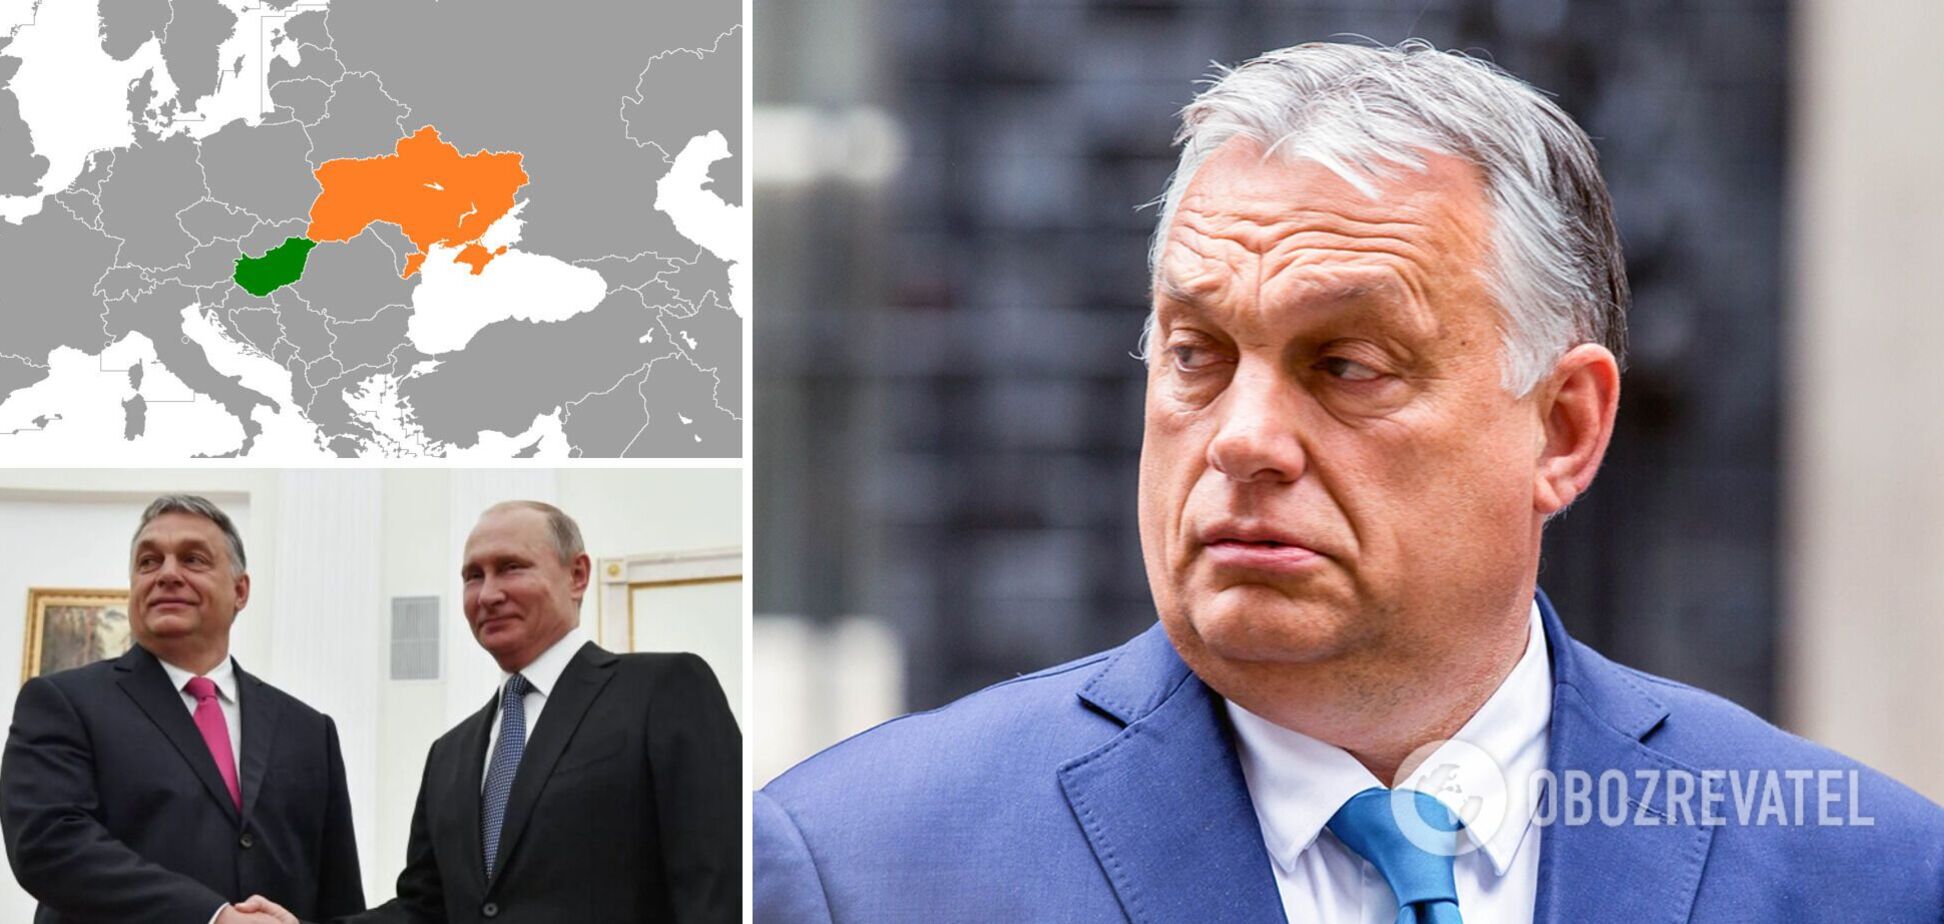 Орбан заявил, что Венгрия на востоке граничит с русскими, забыв об Украине: в МИД вызвали посла